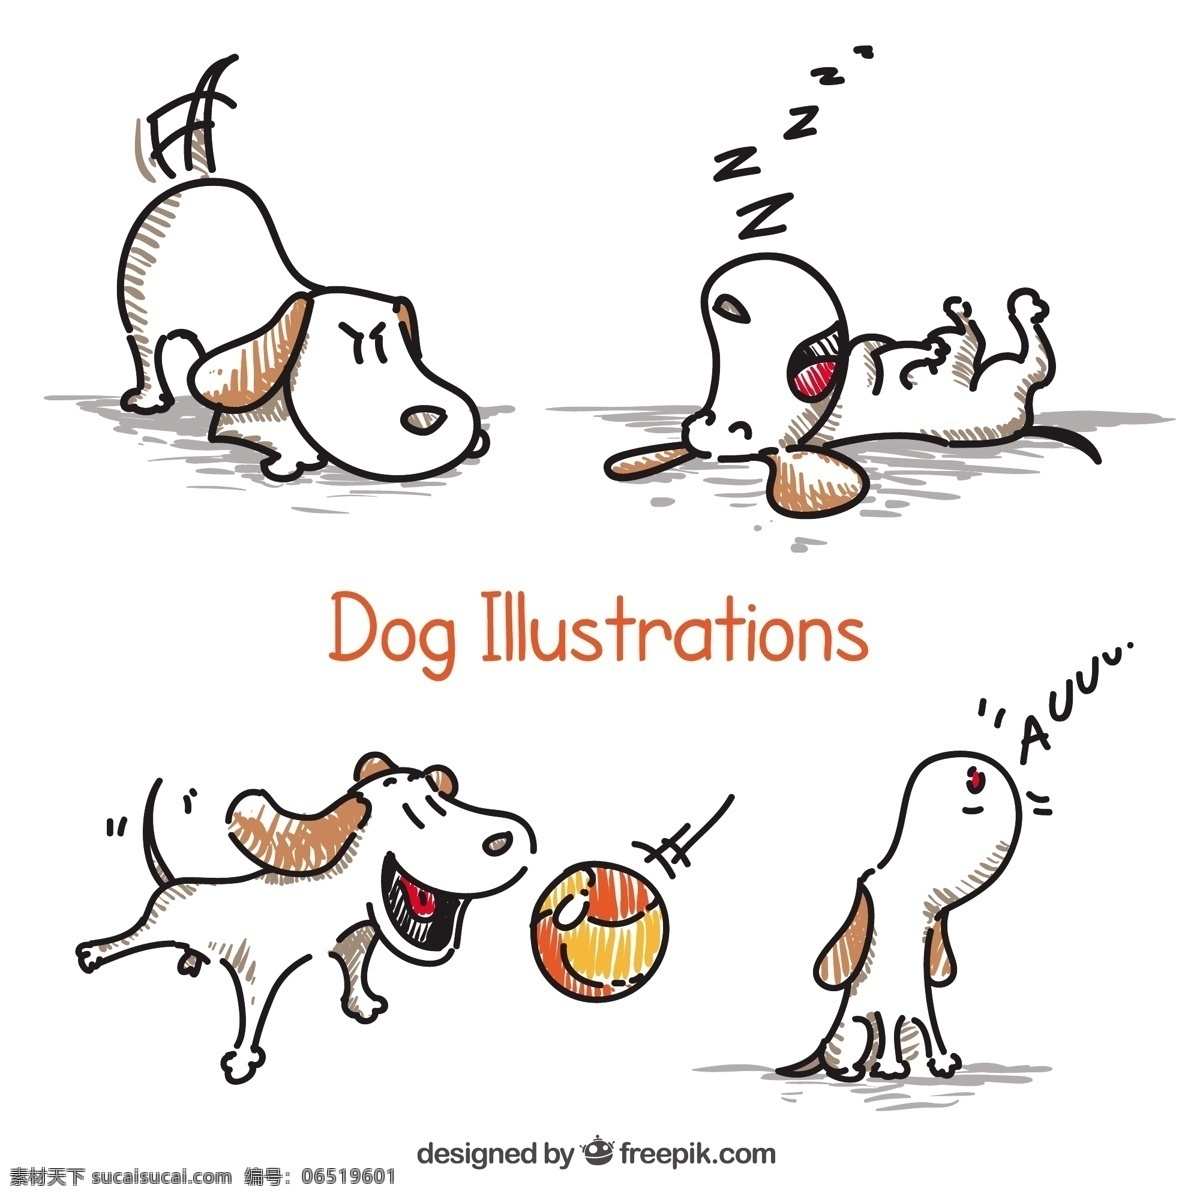 手绘狗插图 一方面 狗 动物 手绘 宠物 插图 绘画 手工绘图 绘制插图 粗略 白色